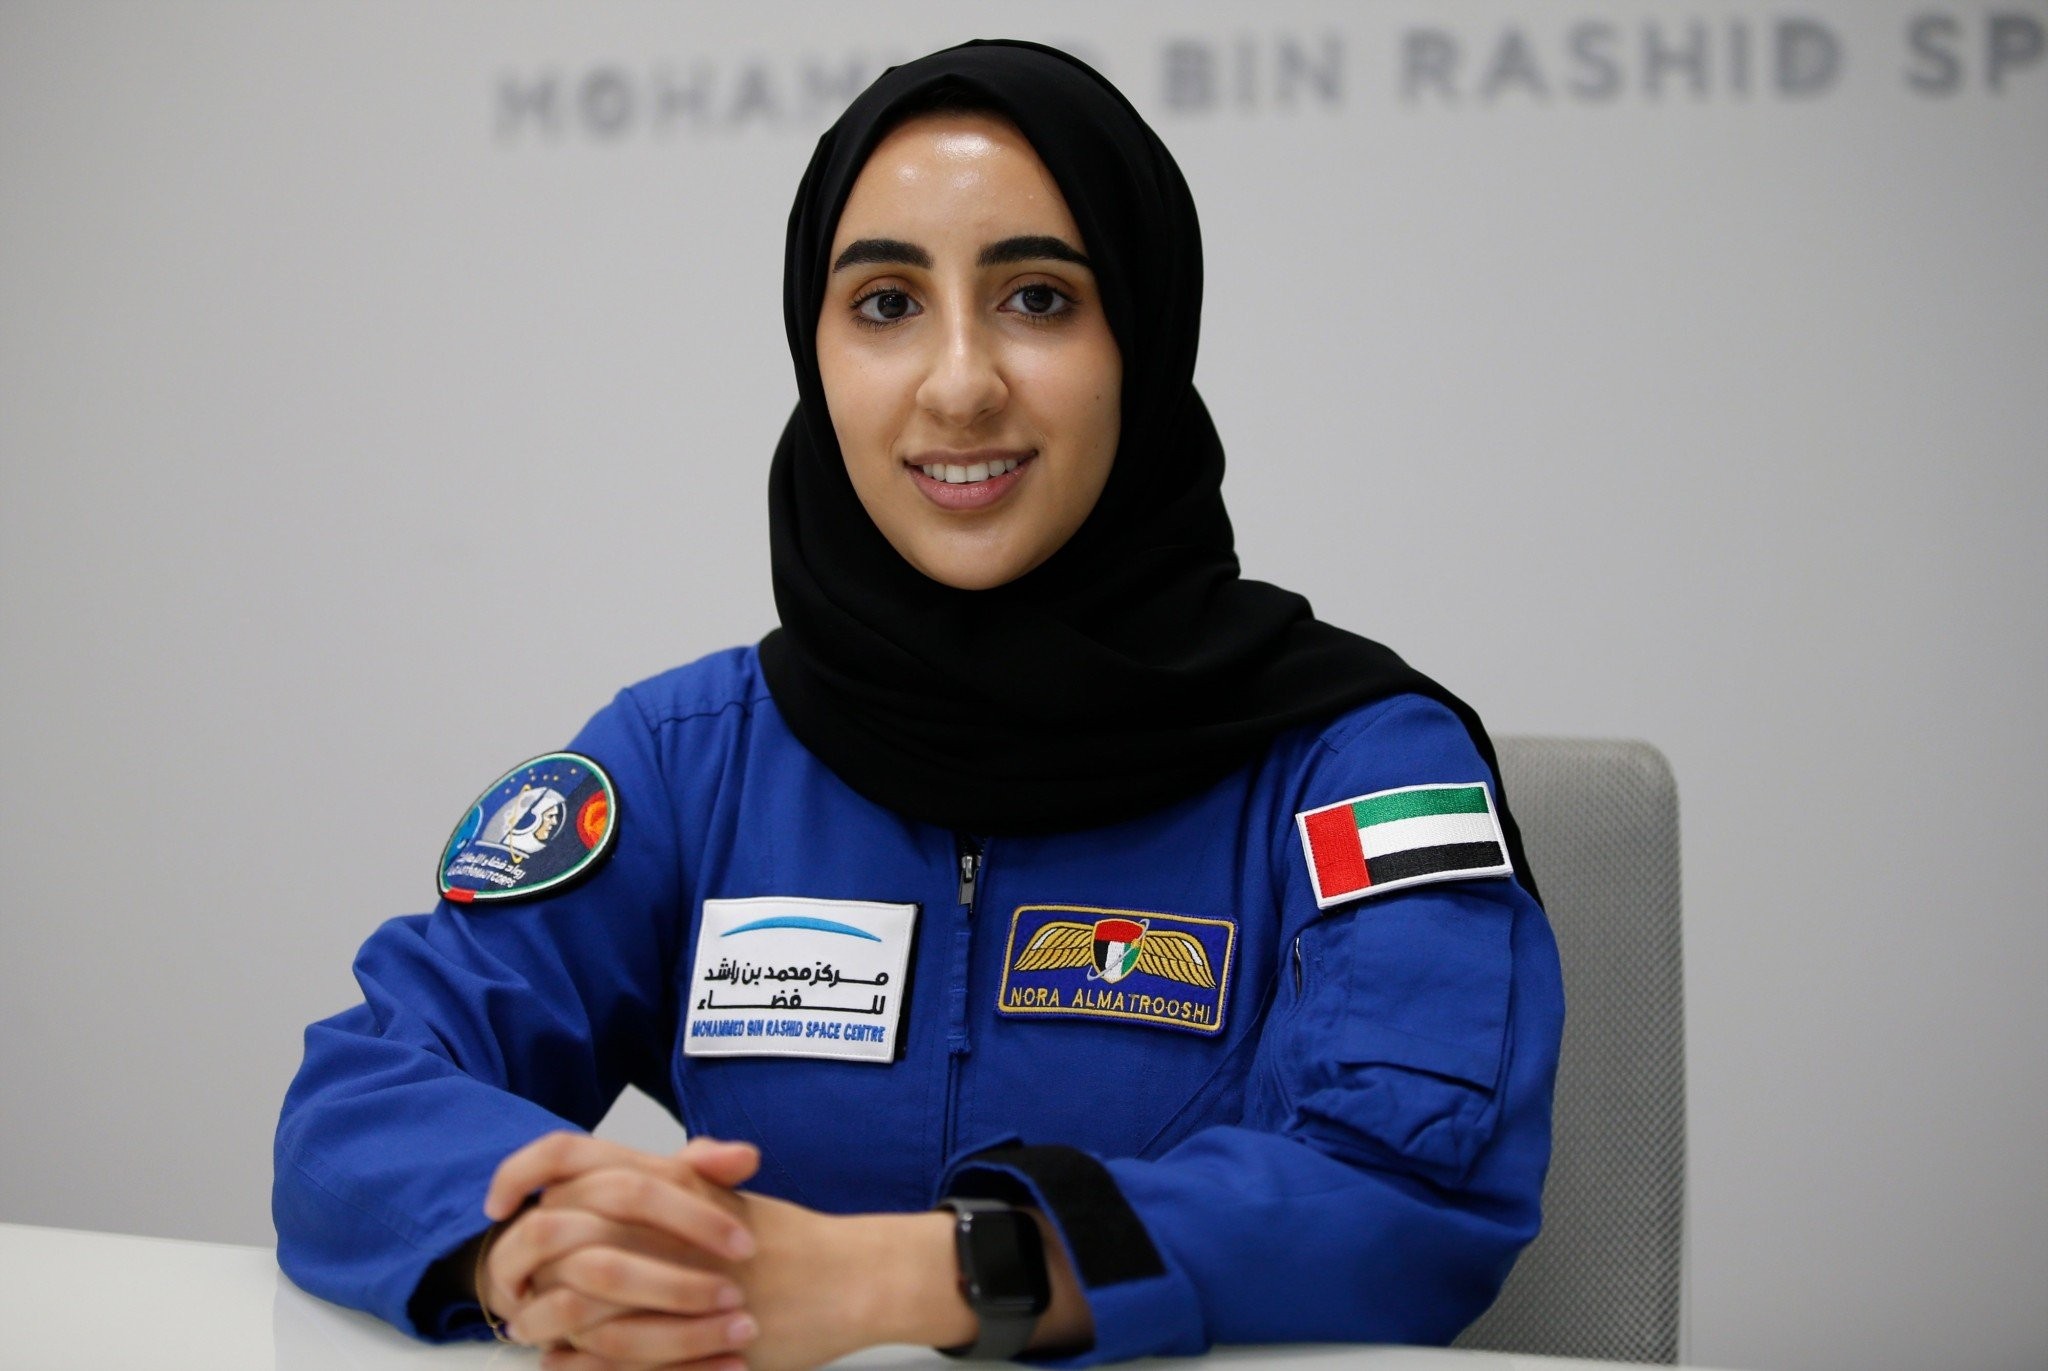 Νόρα Αλ Ματρούσι: Αυτή είναι η πρώτη αστροναύτης αραβικής καταγωγής στη NASA